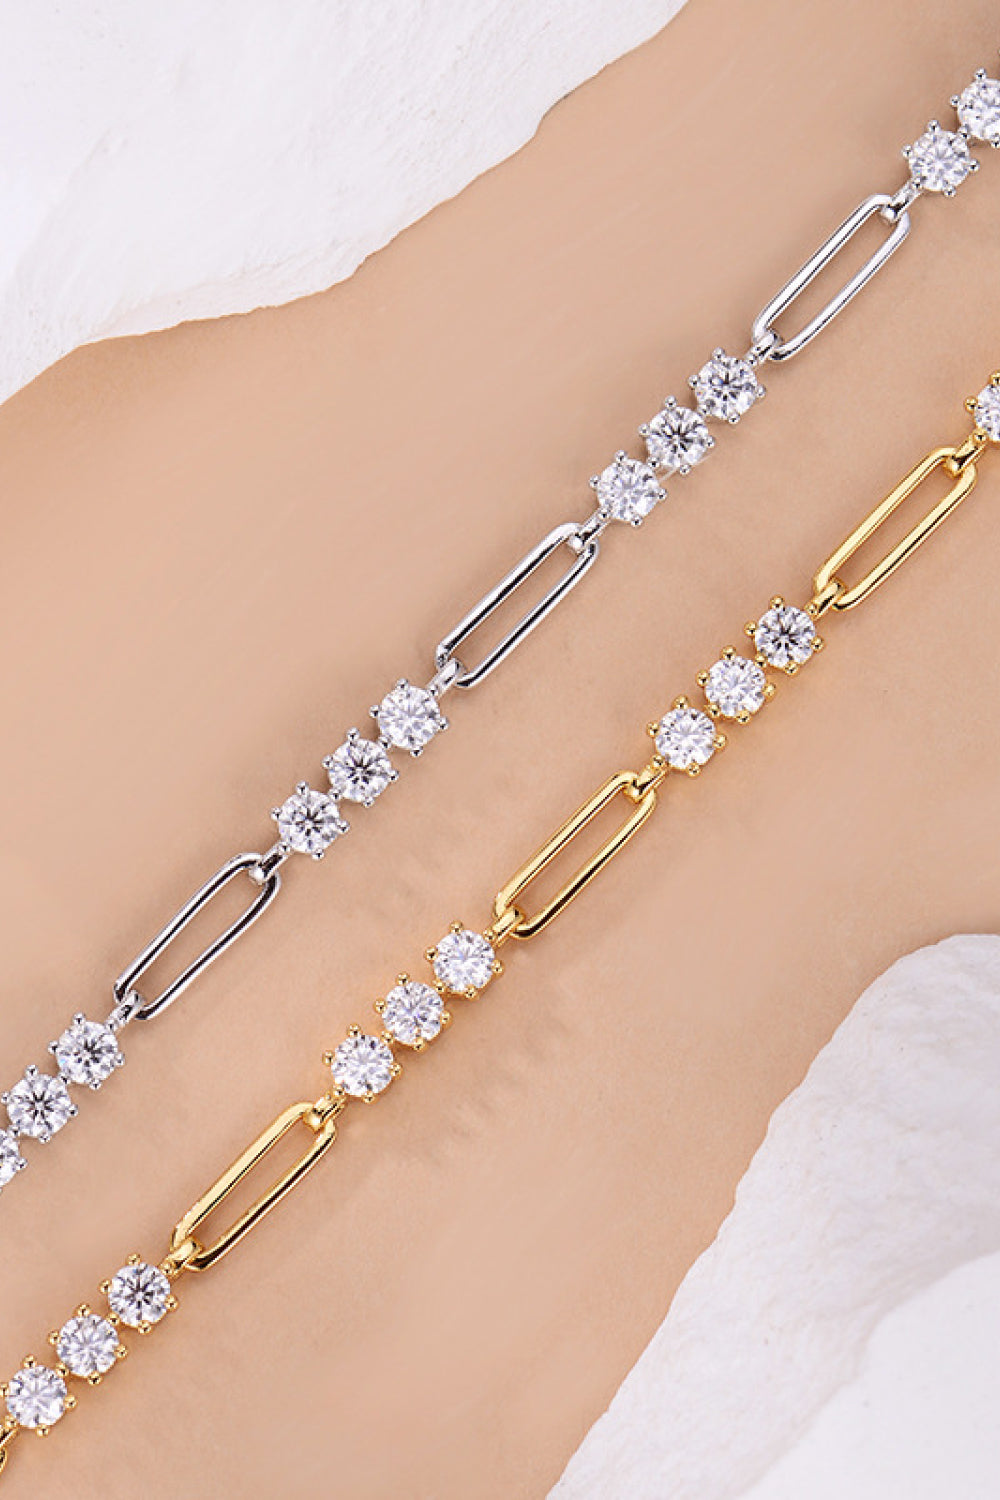 1.8 Carat Moissanite 925 Sterling Silver Bracelet - Women’s Jewelry - Bracelets - 9 - 2024